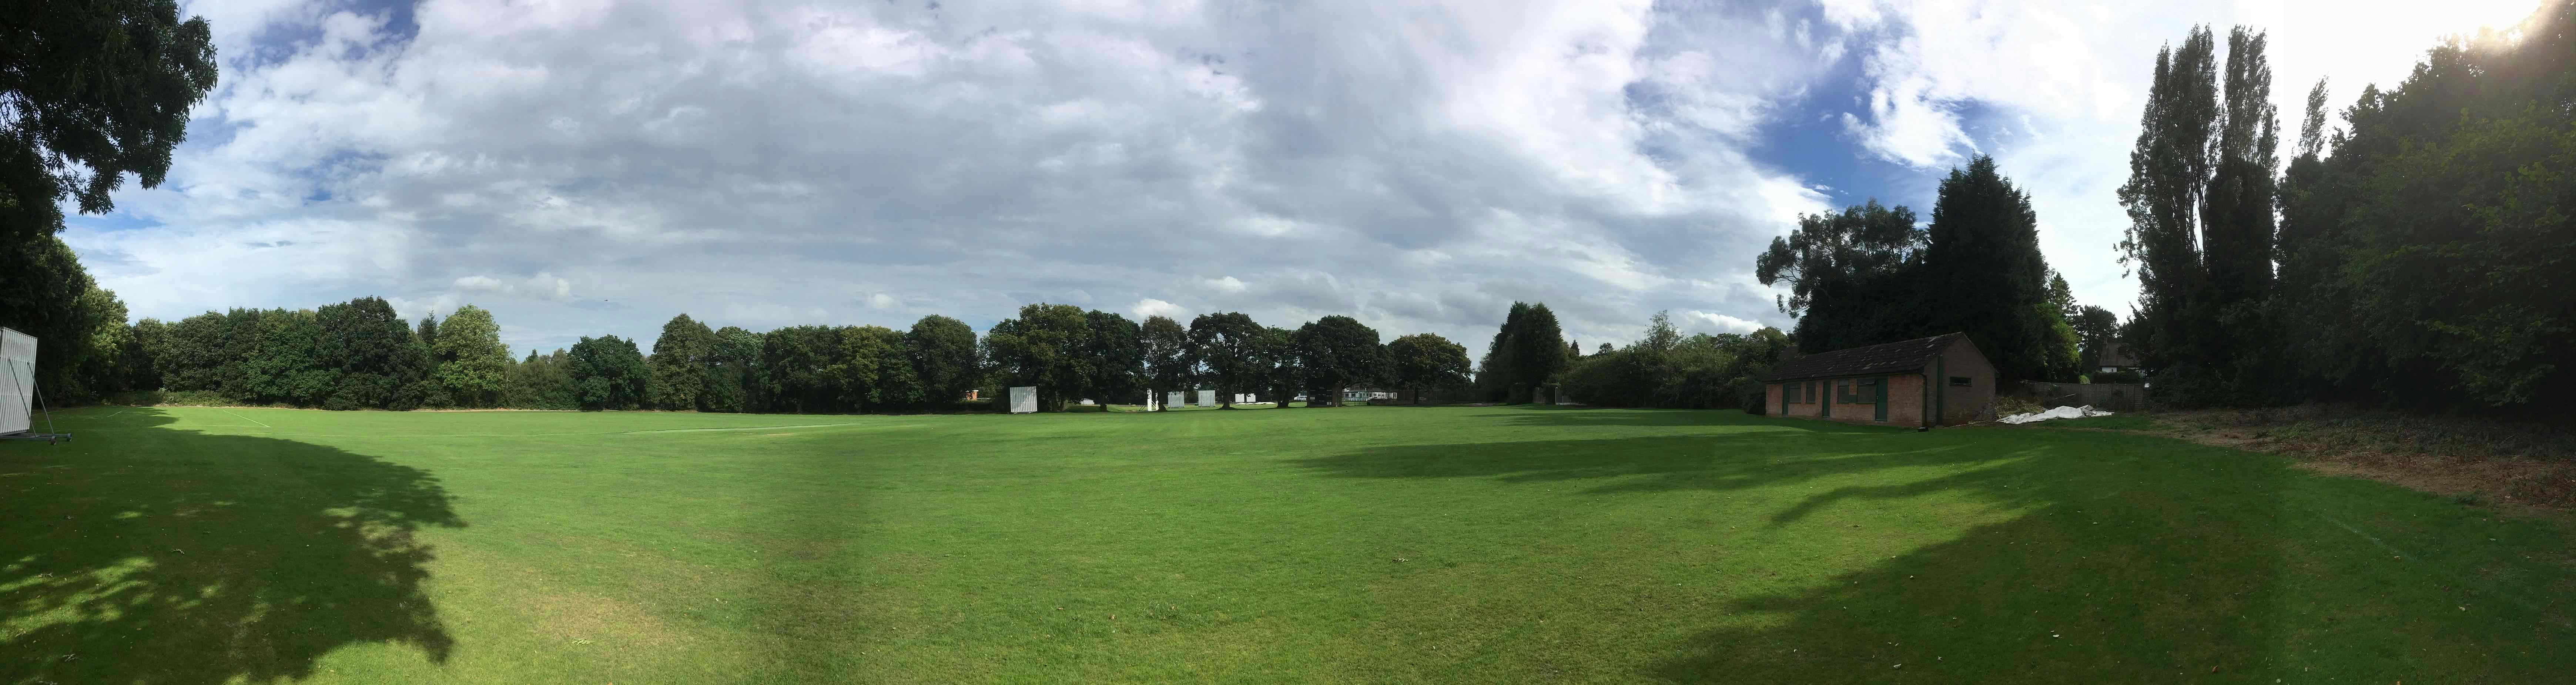 Scorers Fields, Moseley Cricket Club